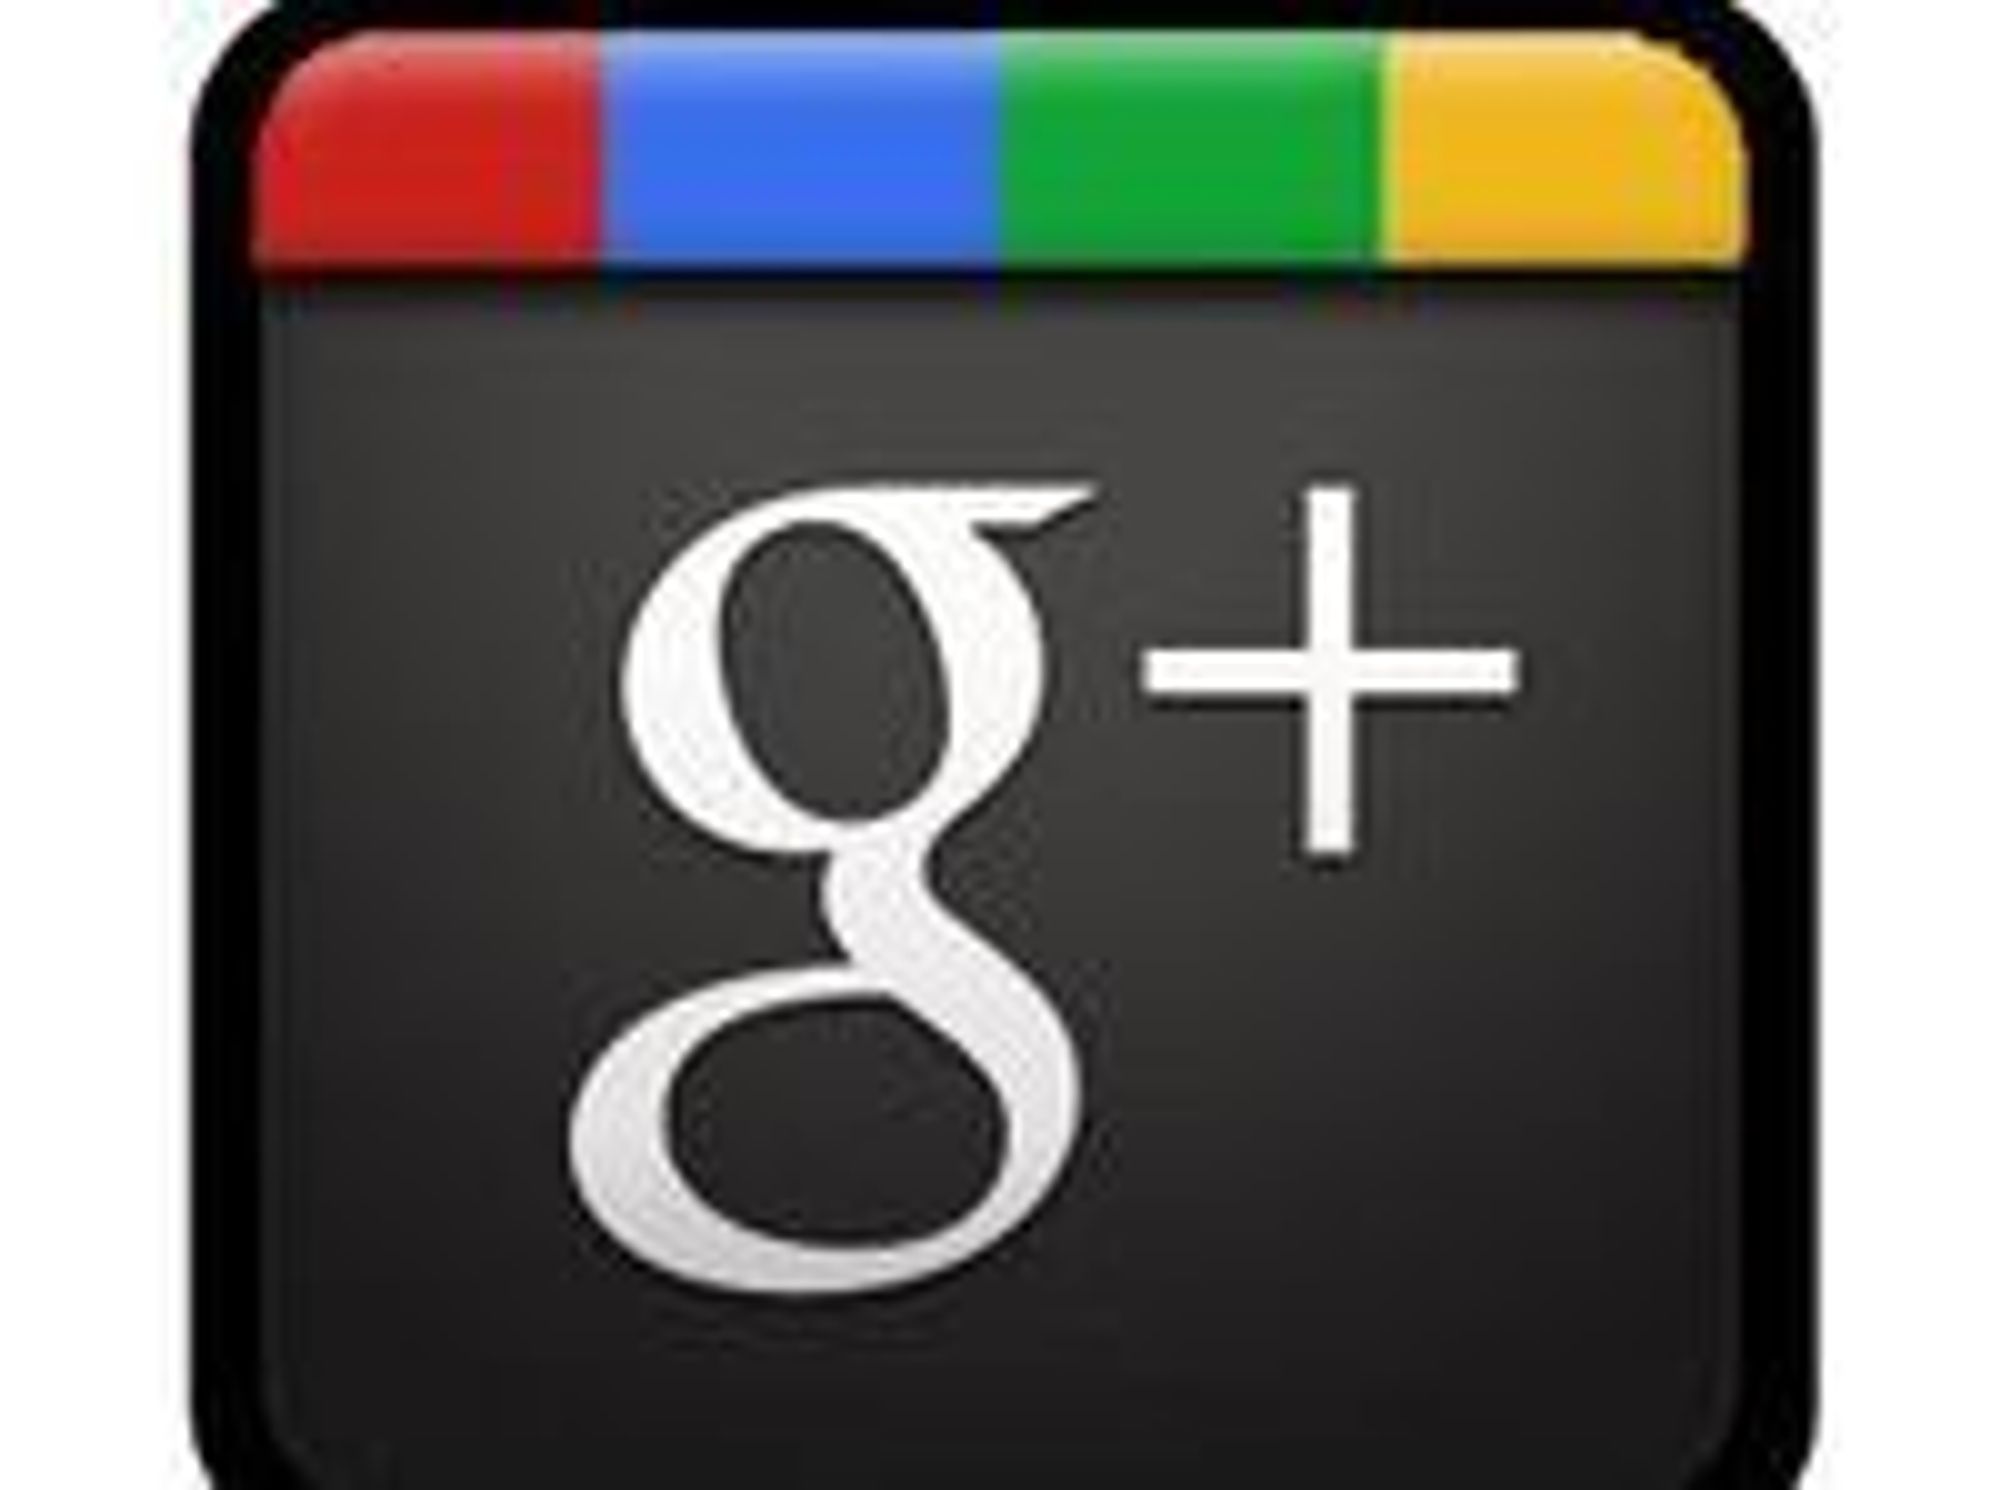 Kjøper selskap for å forbedre Google+